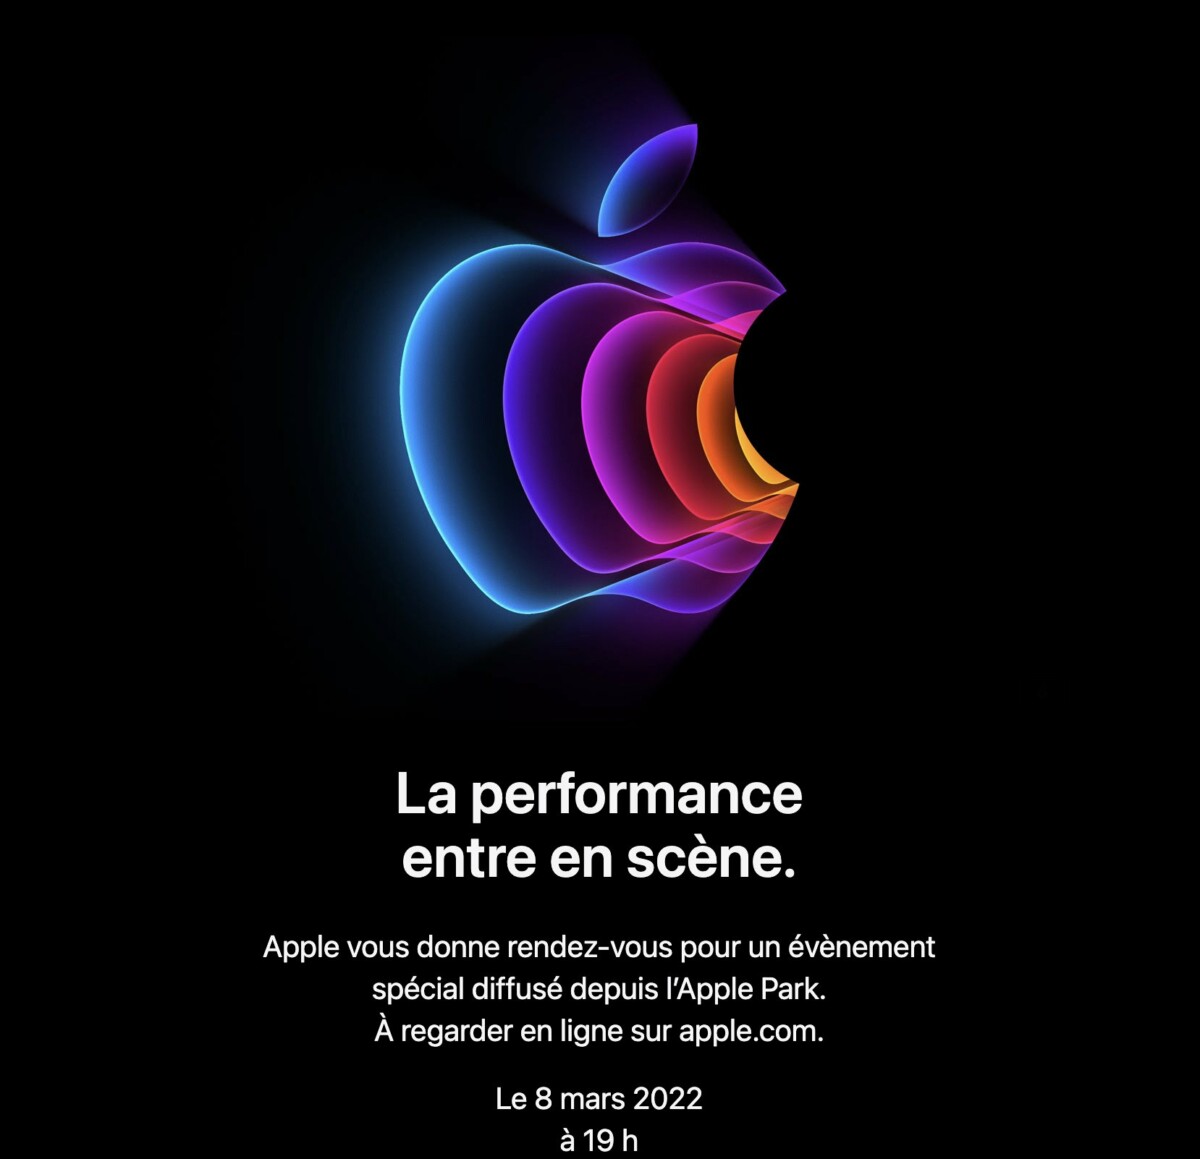 iPhone SE 5G, iPad Air&#8230; Apple annonce une keynote haute en couleurs et performances